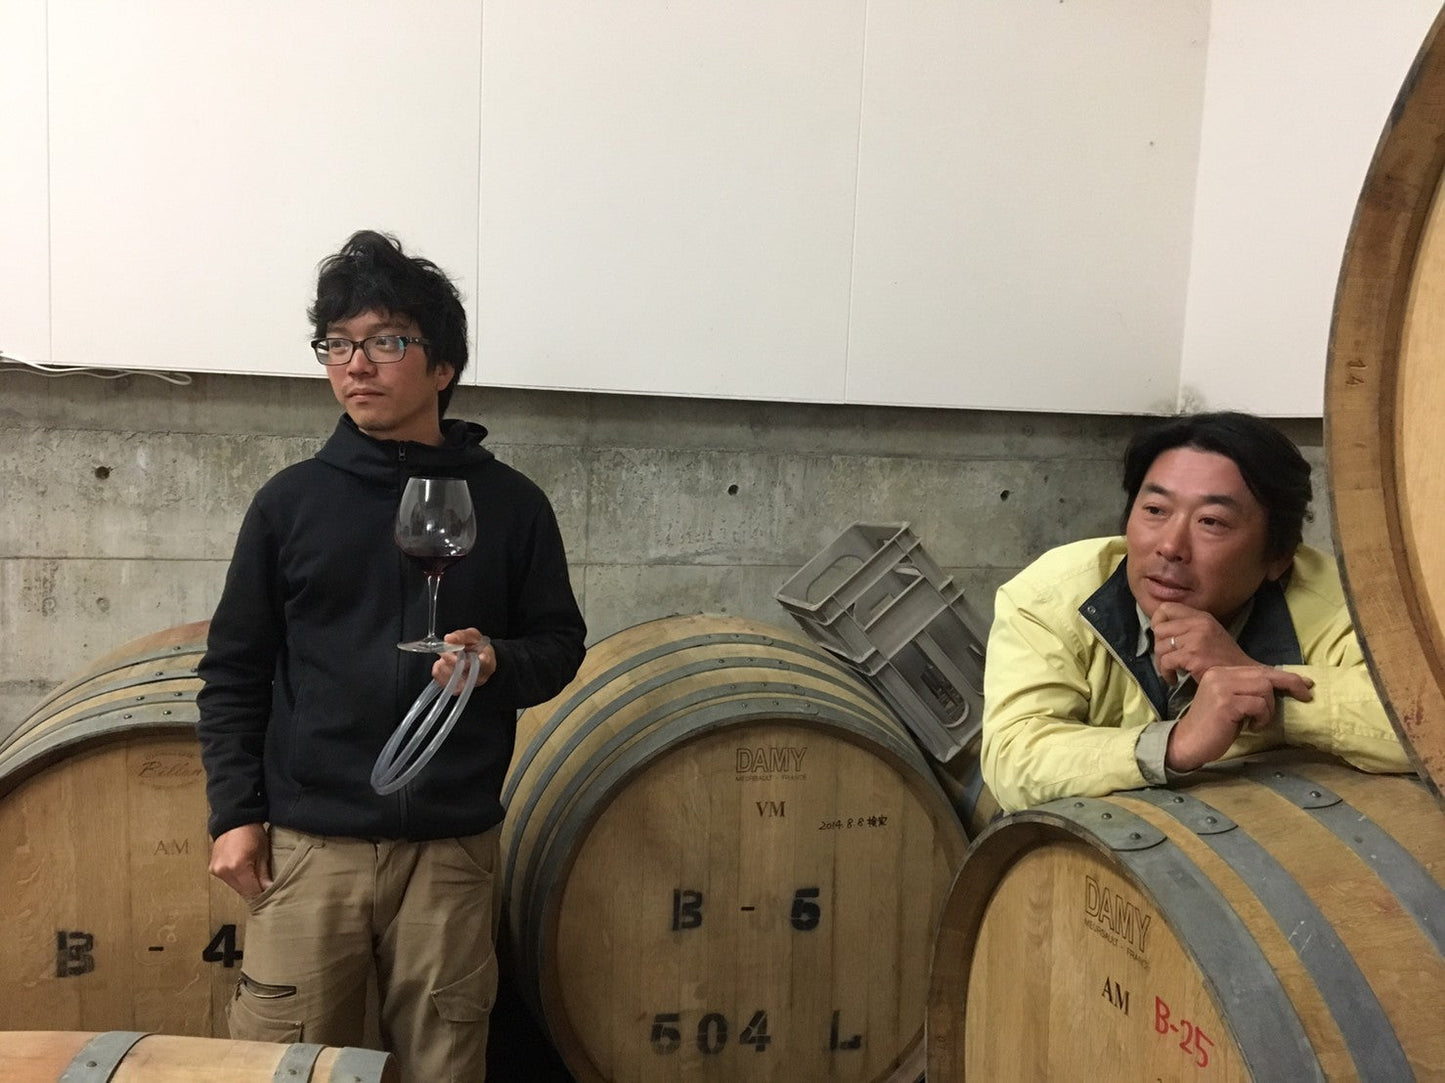 [日本ワイン]南向醸造 oretachi blanc 2022 白 750ml